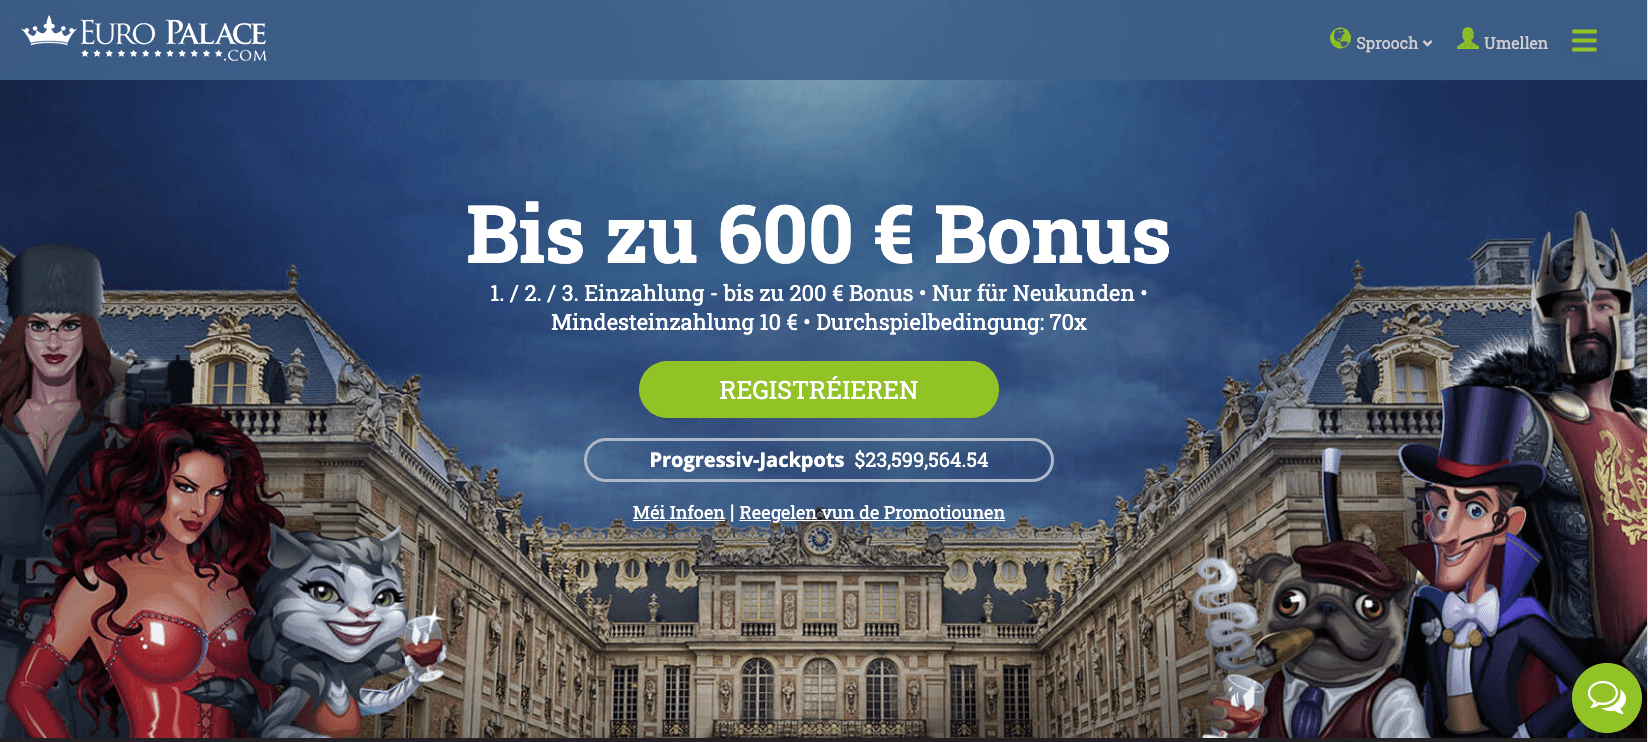 euro palace willkommens bonus